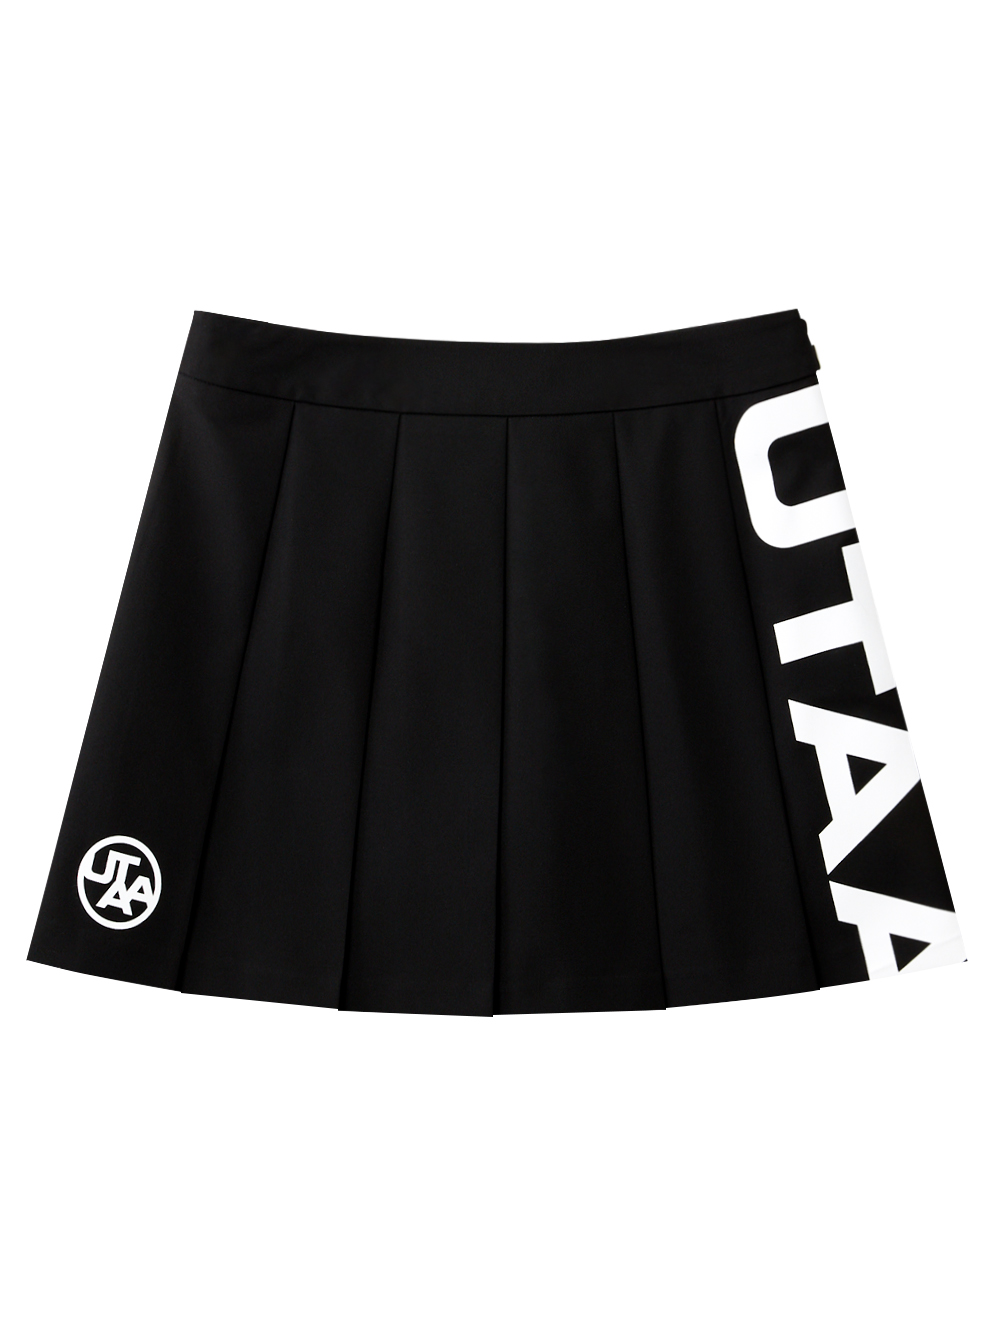 UTAA Slide Bulk Logo Flare Skirt  : Black(UD1SKF291BK)